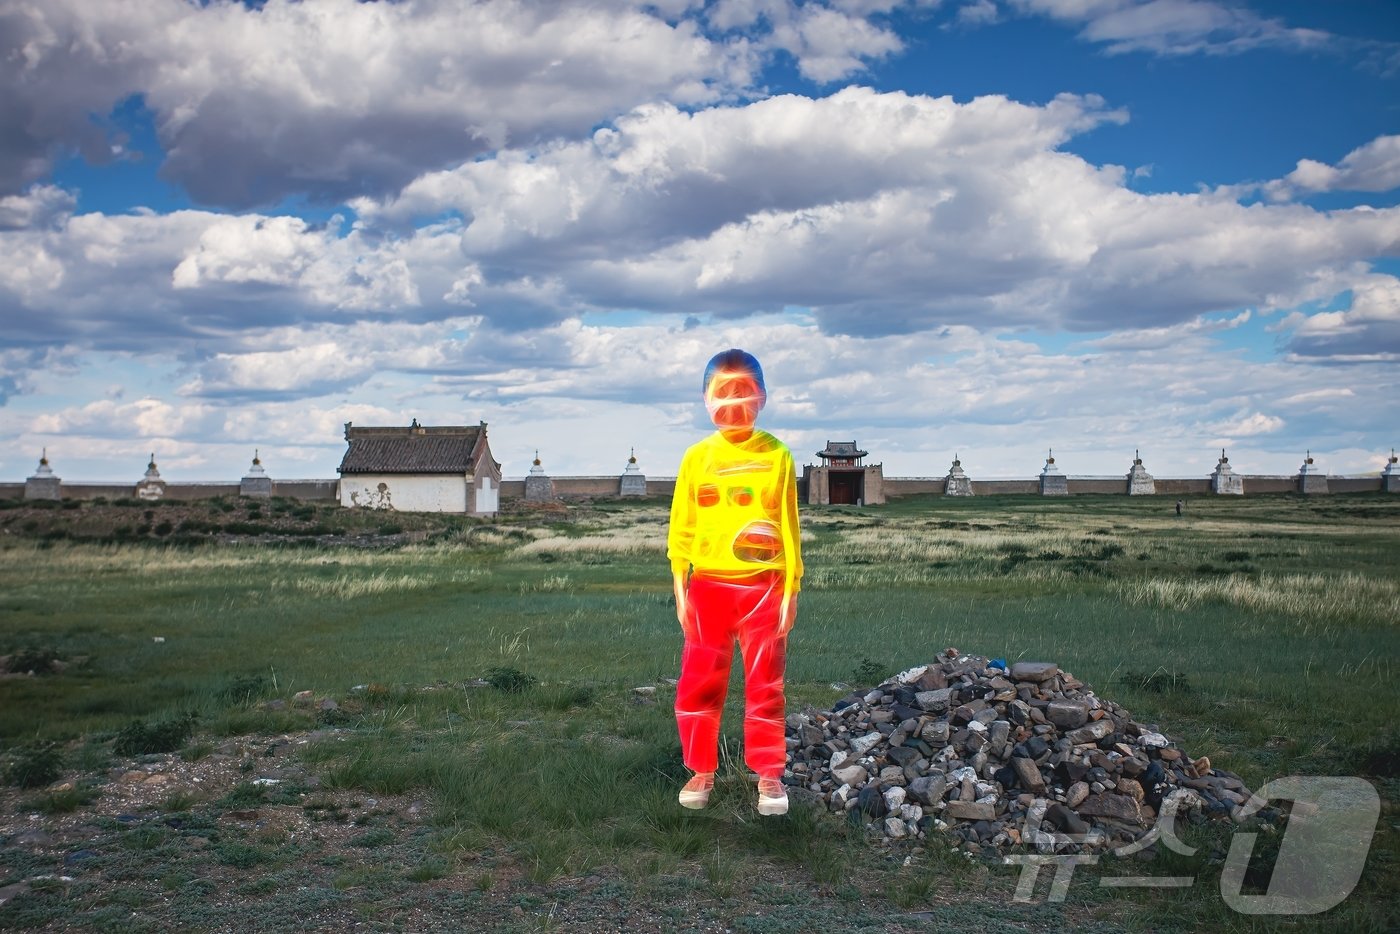 몽골 땅에 대한 다양한 시선을 미술의 스케치 기법을 활용하여 미술적 작업으로 담은 사진작가 황인선의 사진전 &#39;침묵의 땅&#39;이 오는 6월 11일부터 ‘갤러리브레송’에서 개최된다. 